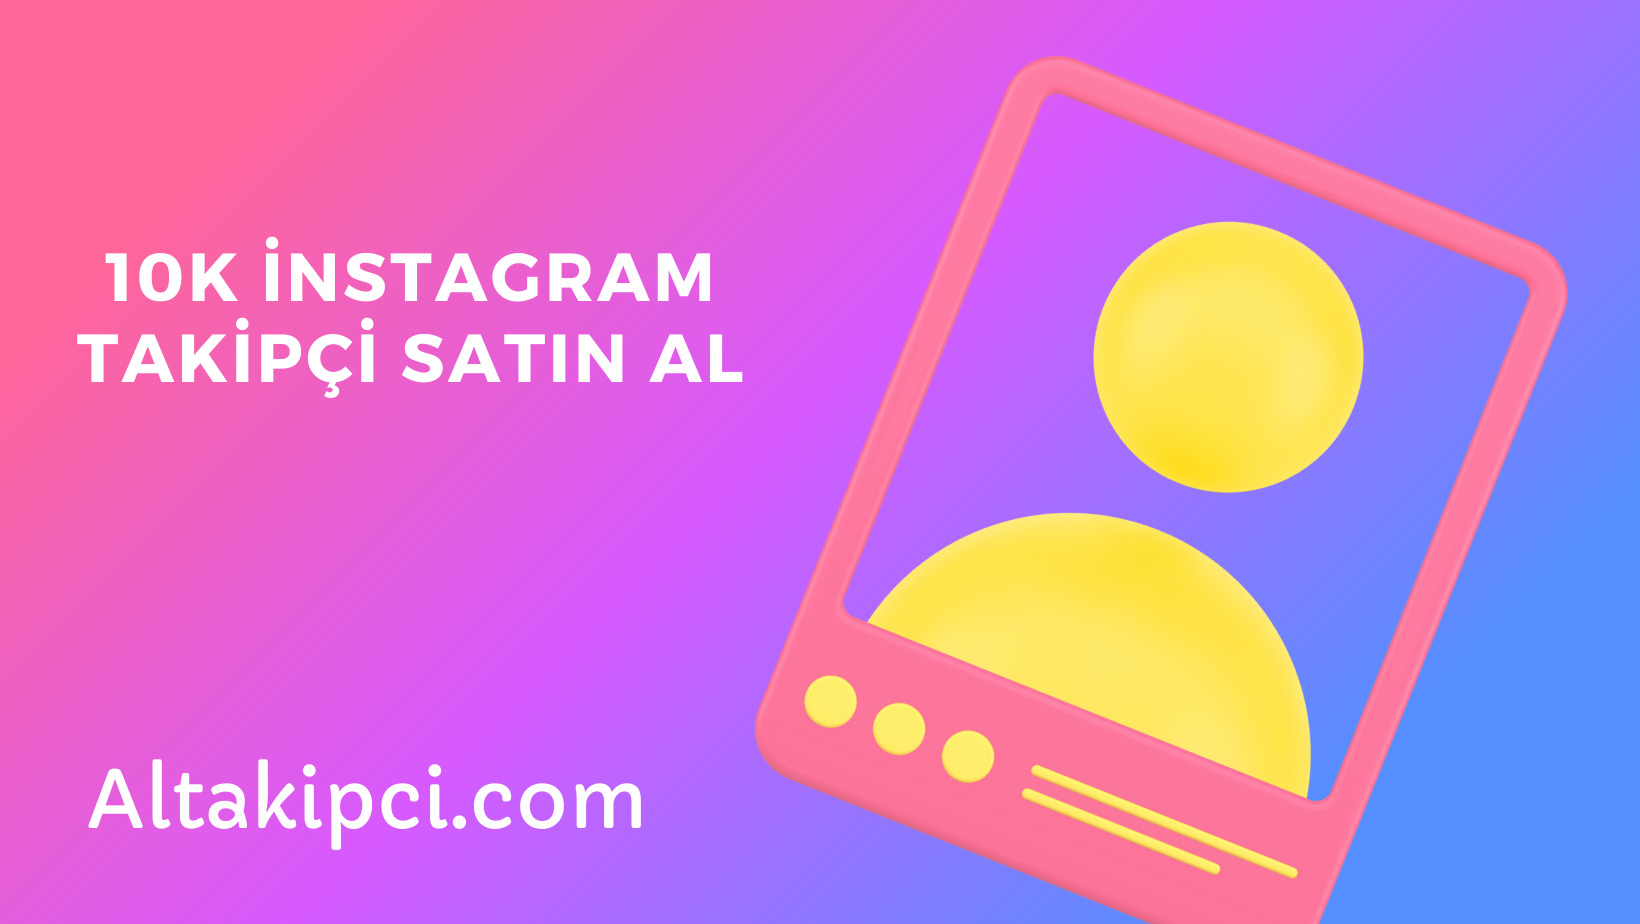 20k-instagram-takipci-satin-al